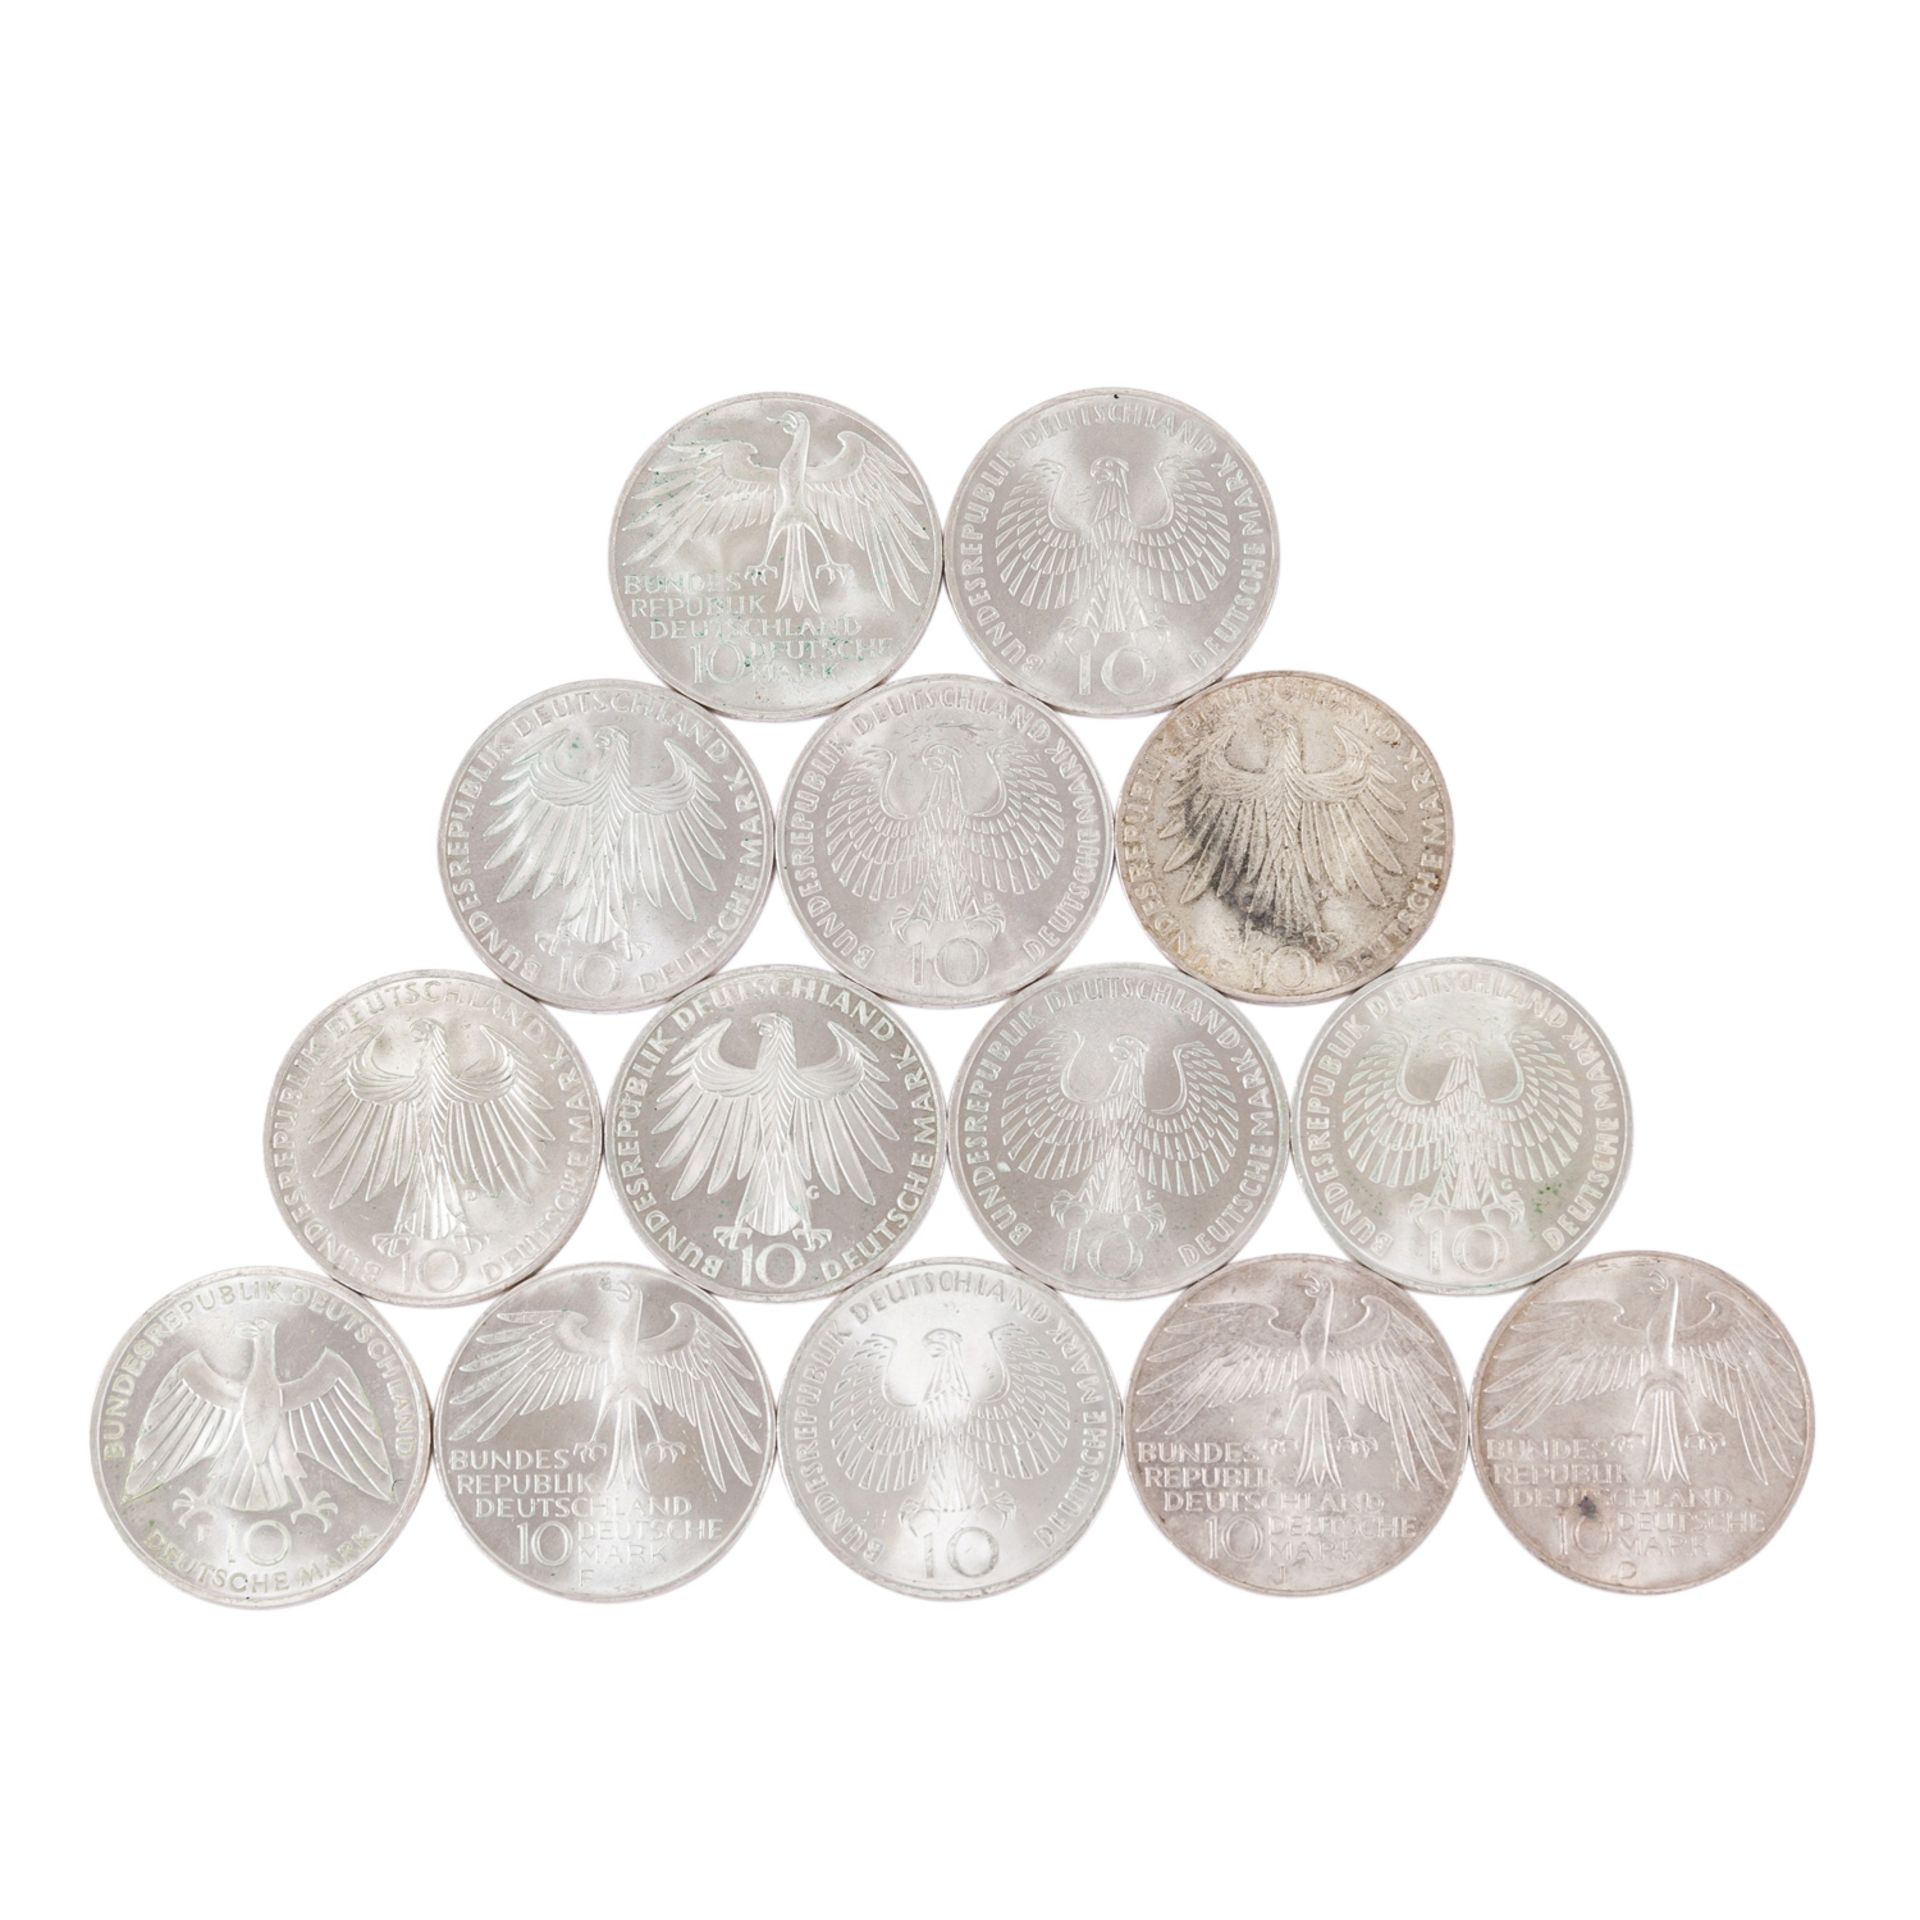 Sammlung BRD - Gedenkmünzen mit 41 x 5 DM und 14 x 5 DM - Image 3 of 6